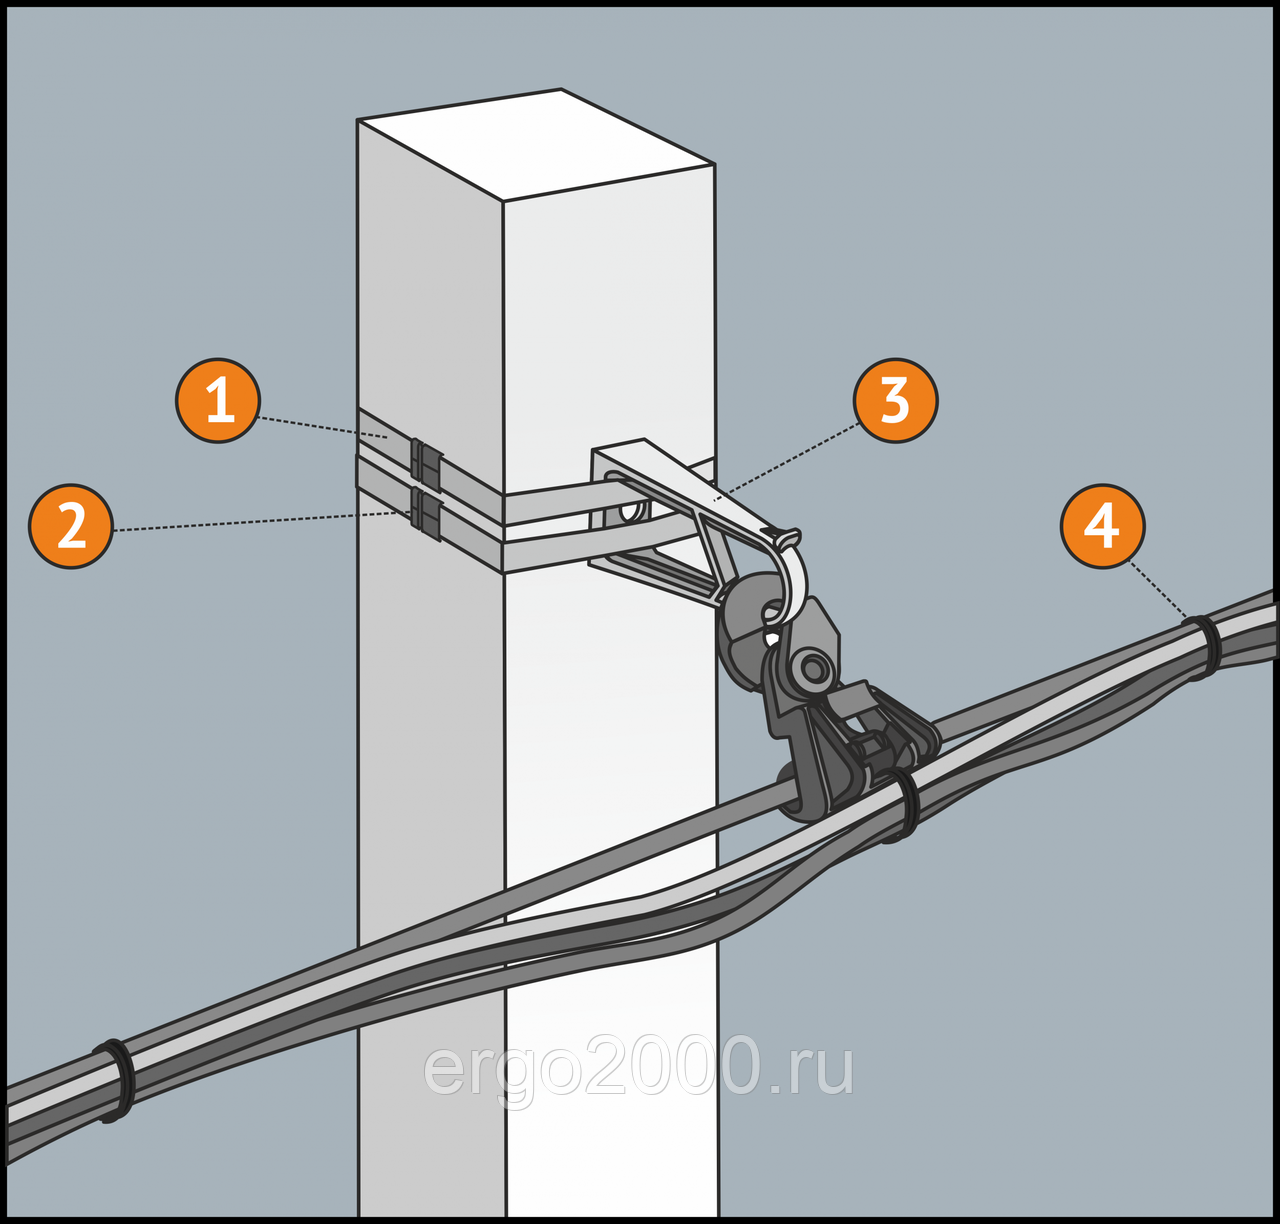 Крепление кабеля: к стене, потолку, столбу, трубе, тросу